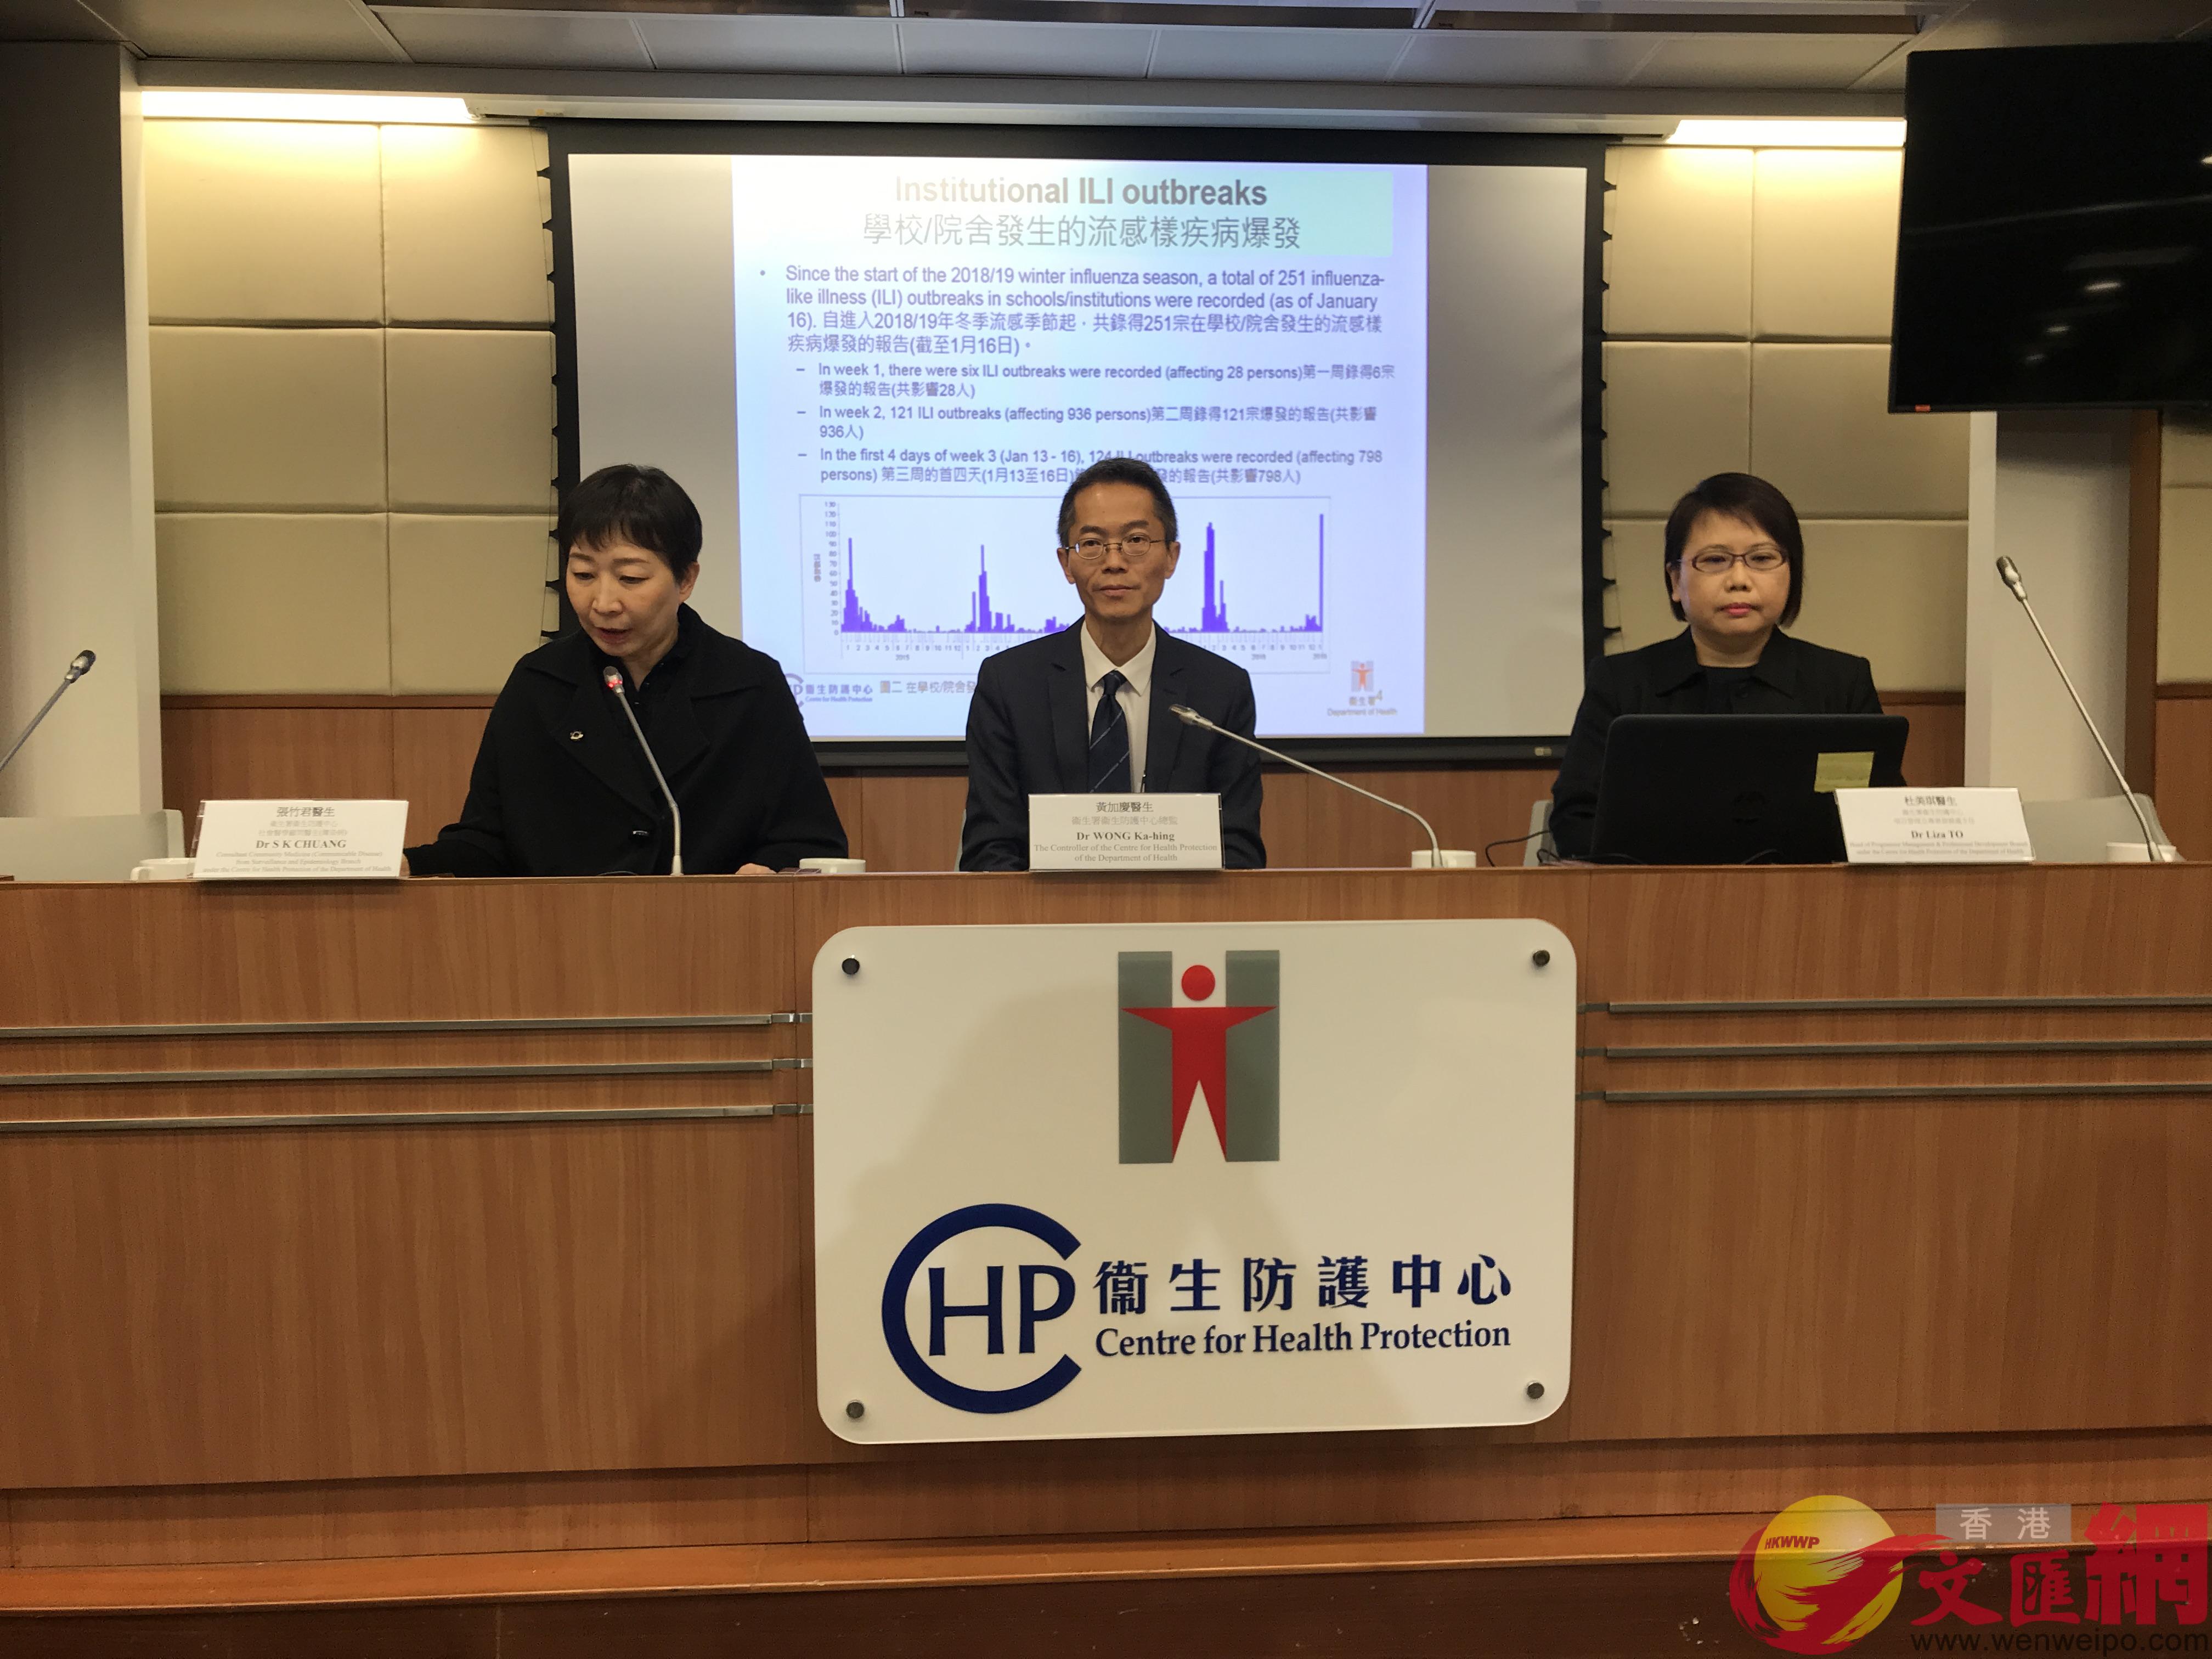 冬季流感6歲以下兒童較受影響A香港191間幼稚園及幼兒中心停課7天C(全媒體記者程朗攝)